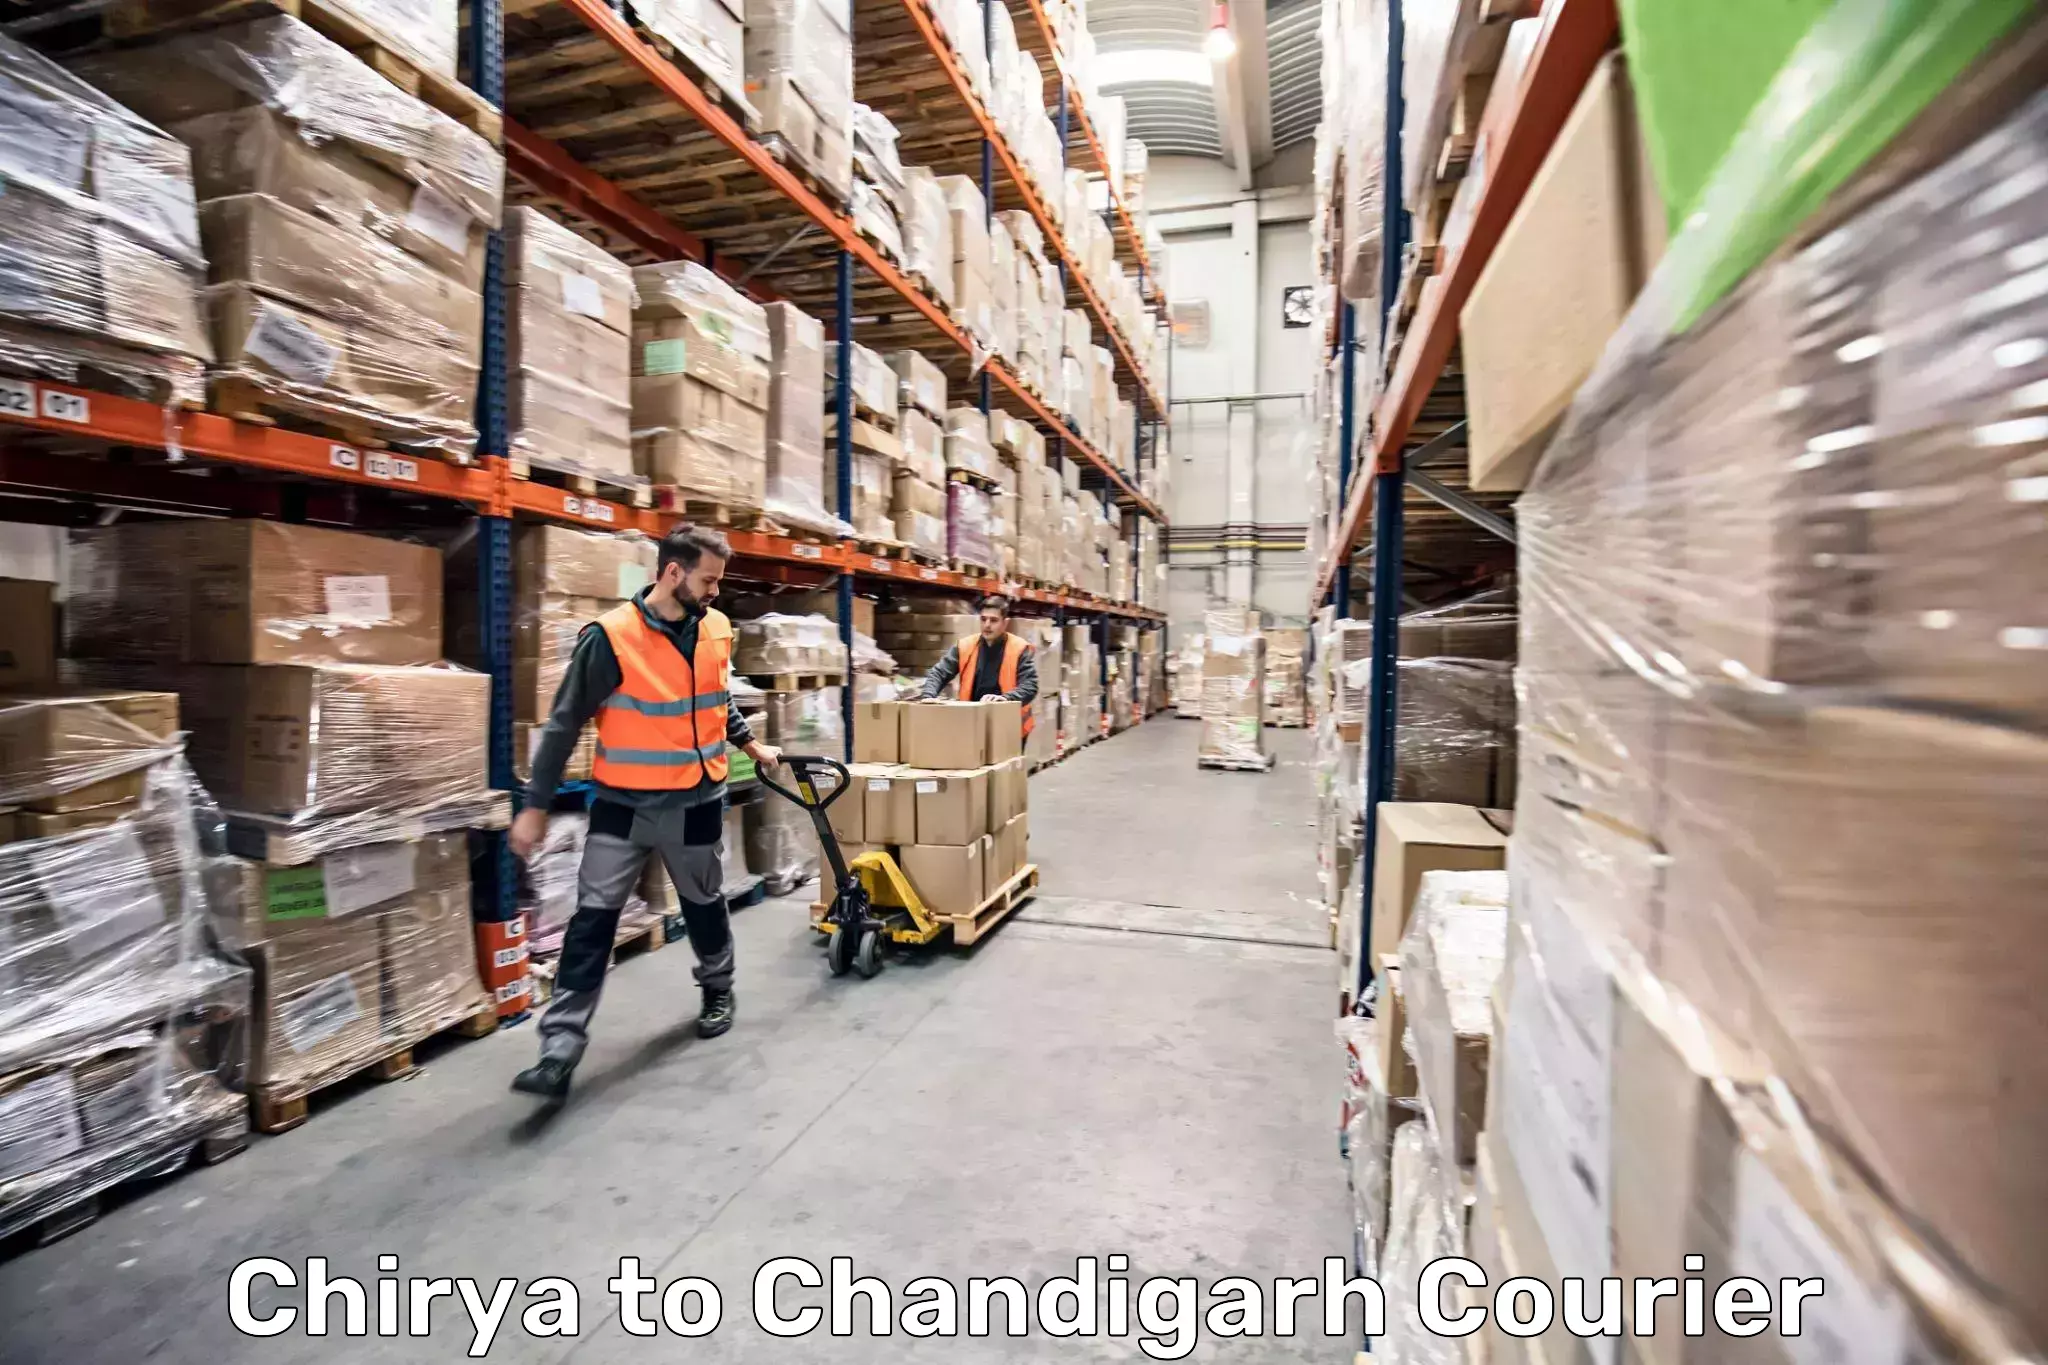 Luggage transport company Chirya to Chandigarh